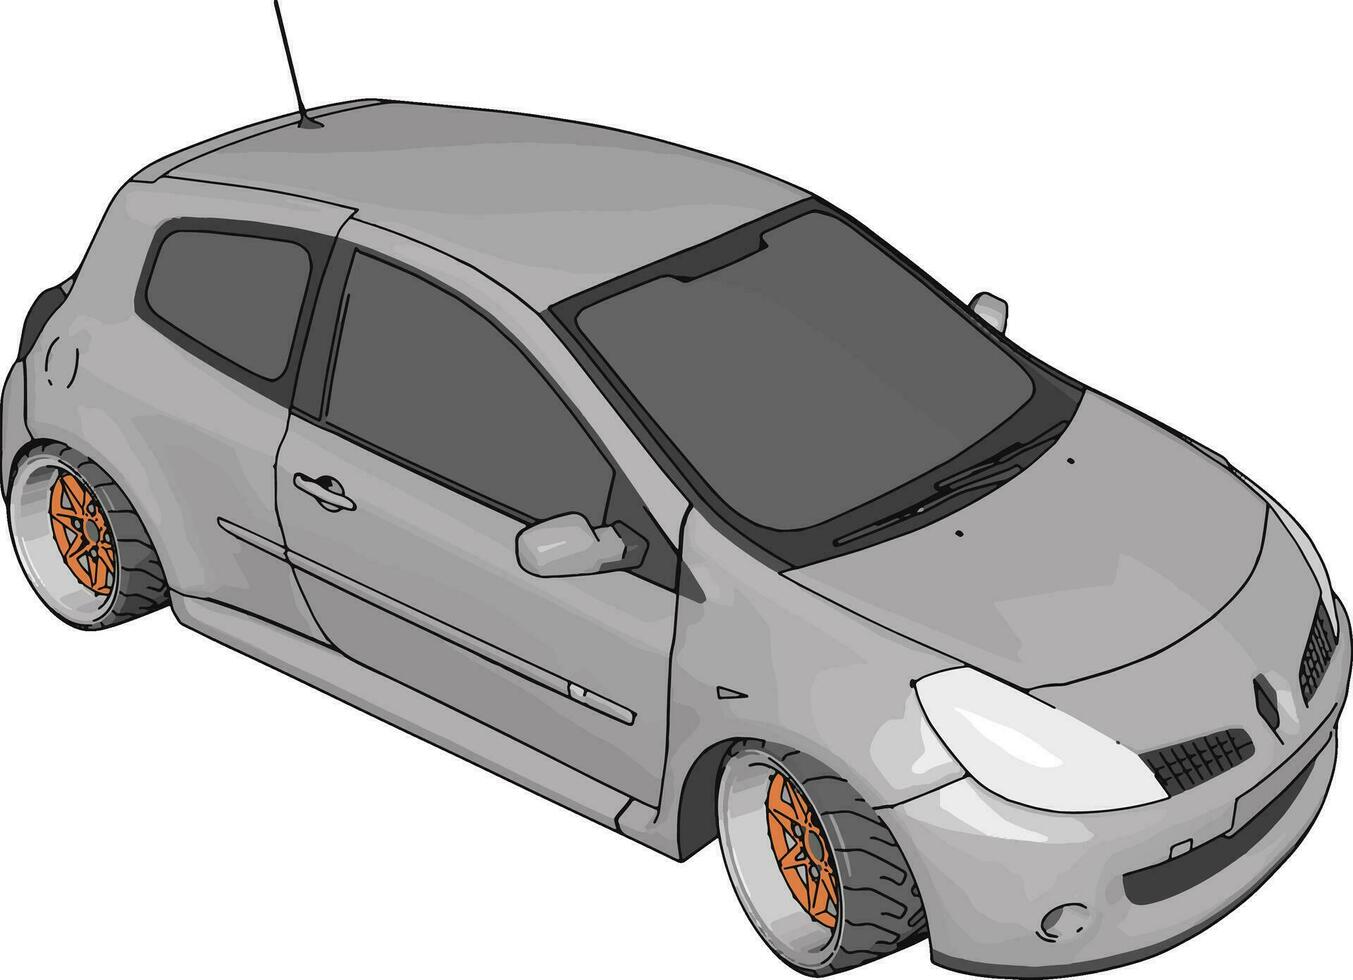 Renault Clio blanco, ilustración, vector sobre fondo blanco.